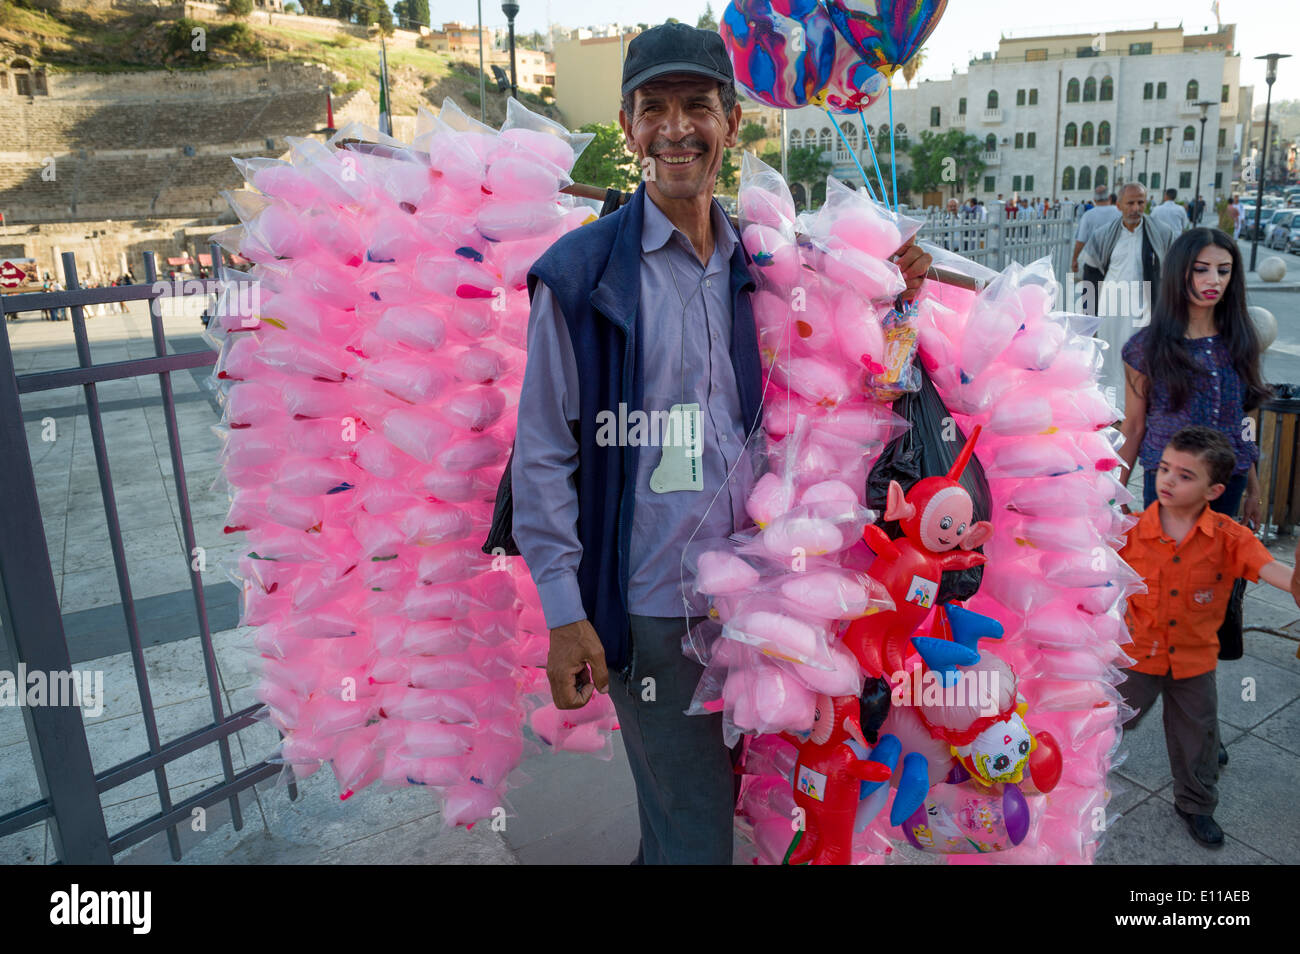 Uomo giordani la vendita di caramelle rosa-filo interdentale nella vivace piazza antistante il teatro romano, Amman, Giordania Foto Stock